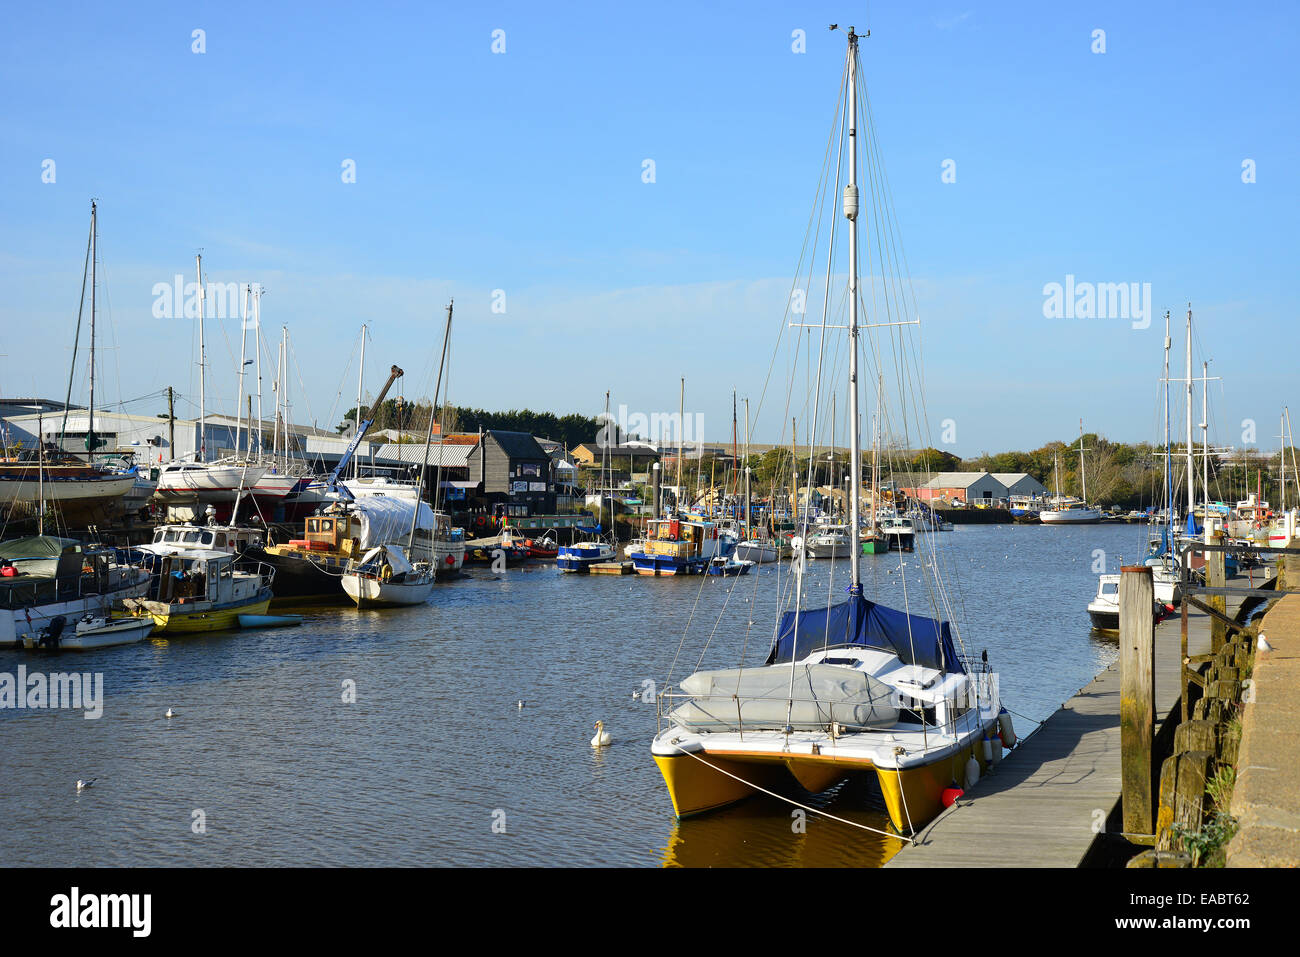 Seaclose Quay, Newtown Port, Rivière Medina, Newtown, île de Wight, Angleterre, Royaume-Uni Banque D'Images